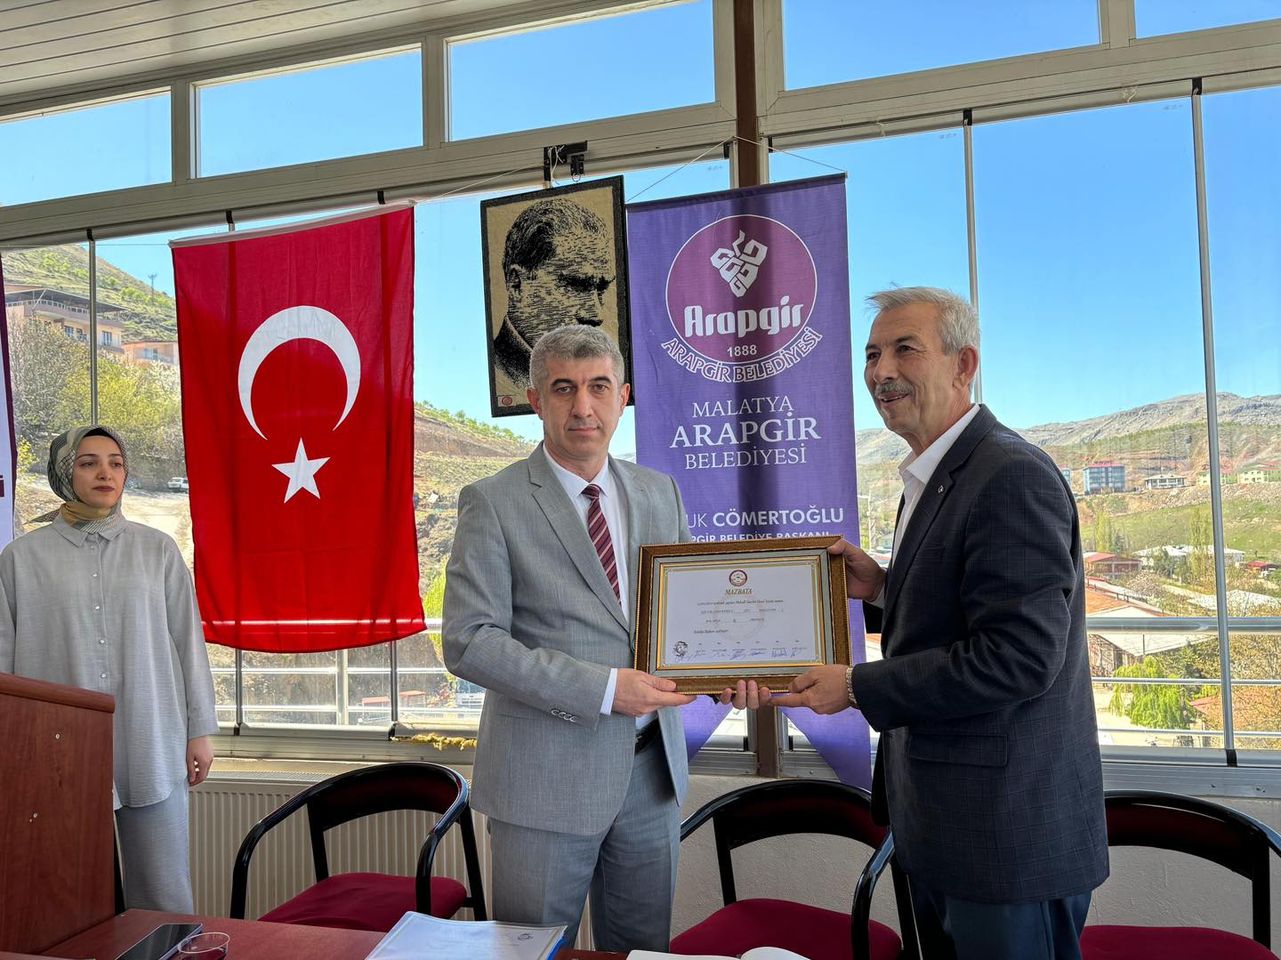 Haluk Cömertoğlu, Arapgir'in ikinci dönem belediye başkanı olarak göreve başladı